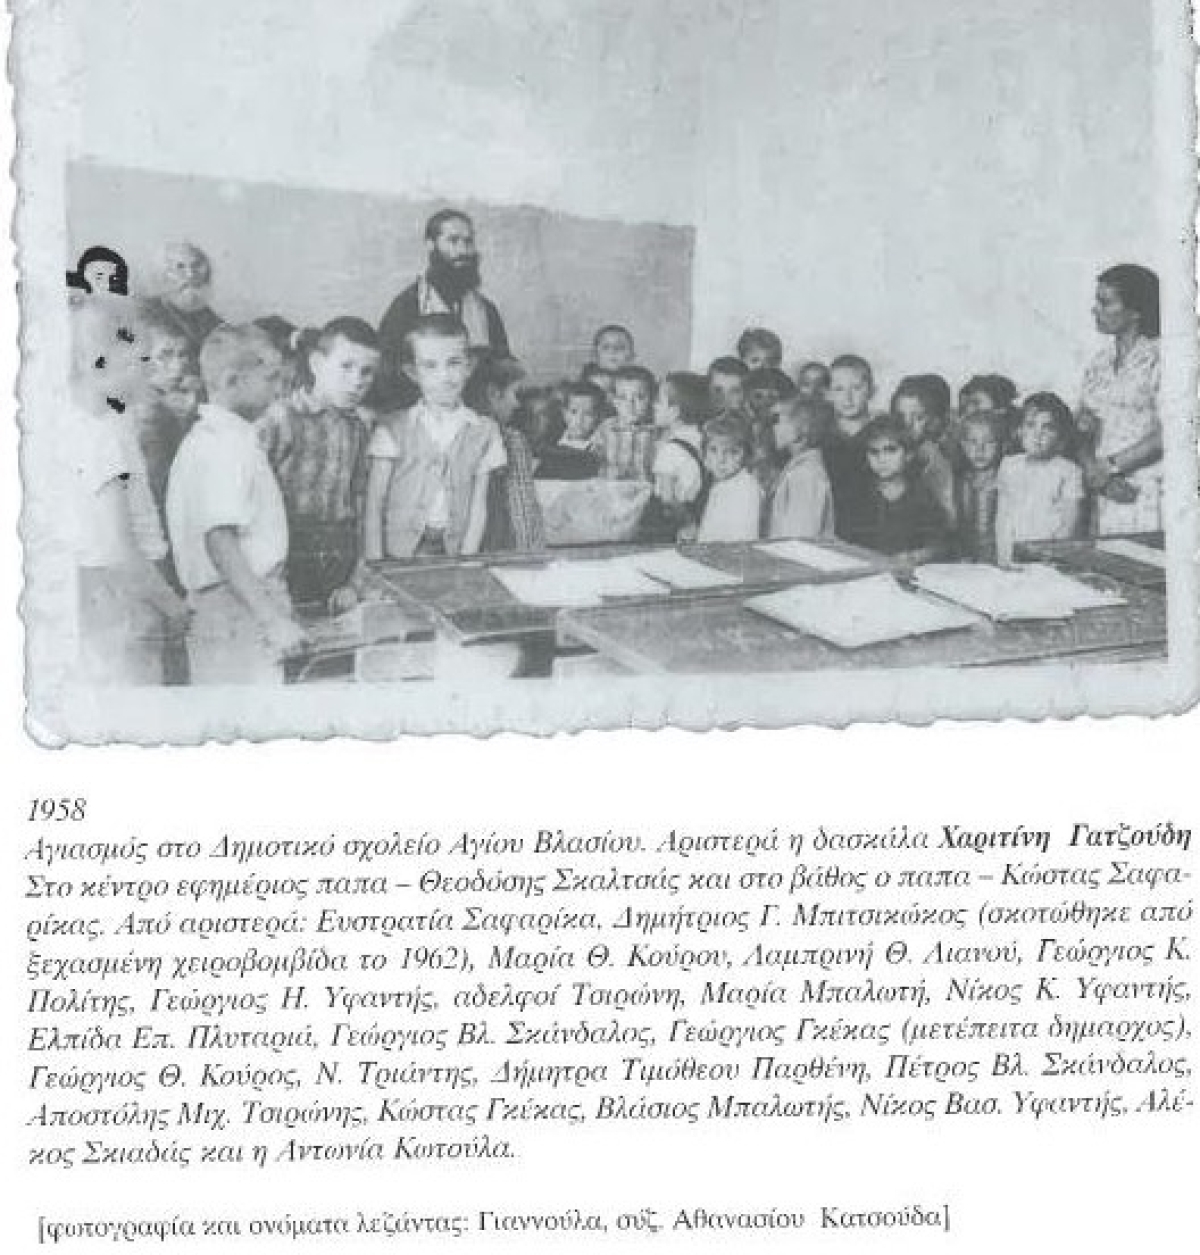 1958: Οι μαθητές του Δημοτικού Σχολείου Αγίου Βλασίου Αγρινίου μιας άλλης εποχής